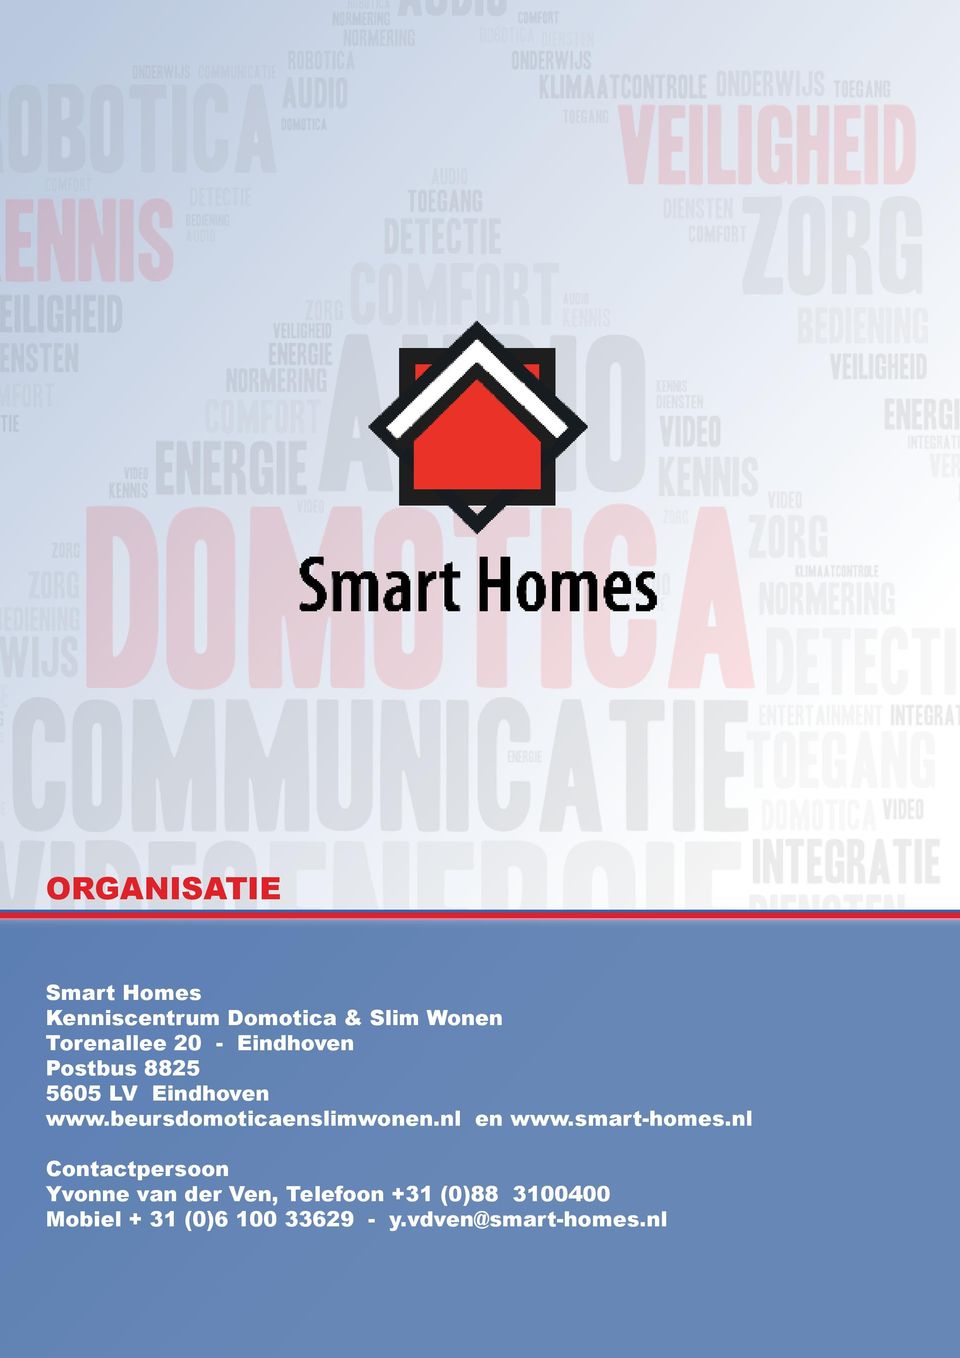 beursdomoticaenslimwonen.nl en www.smart-homes.